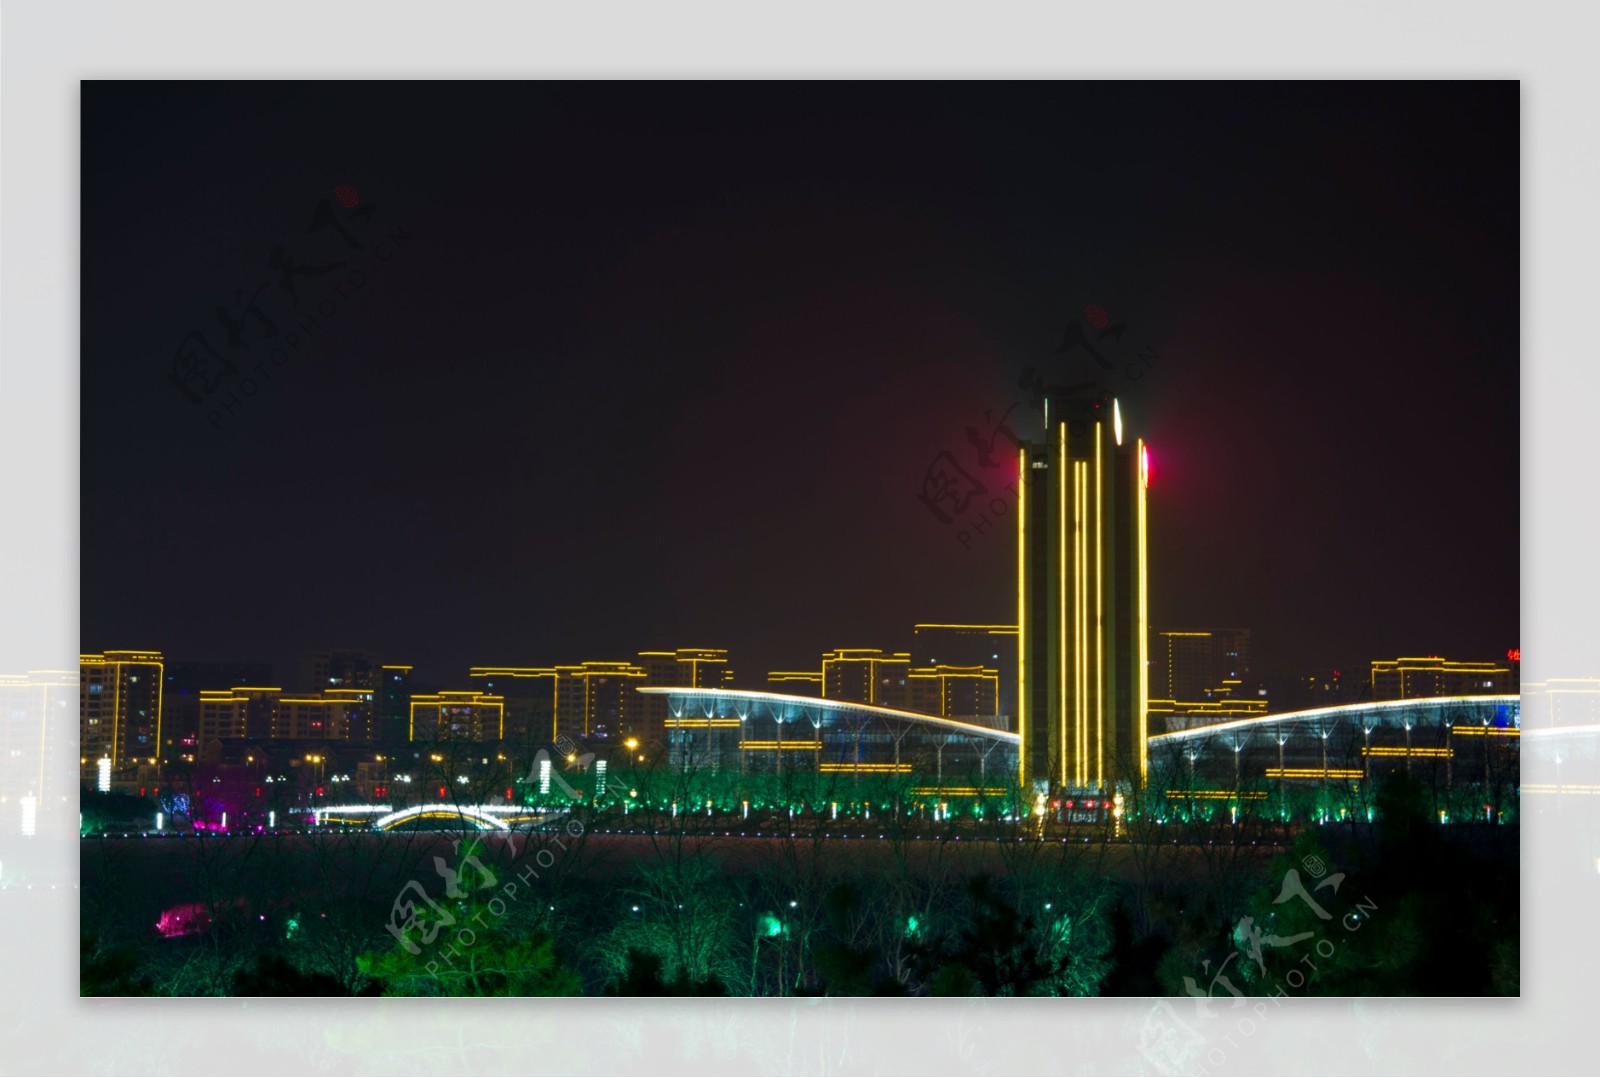 铁岭新城夜景图片